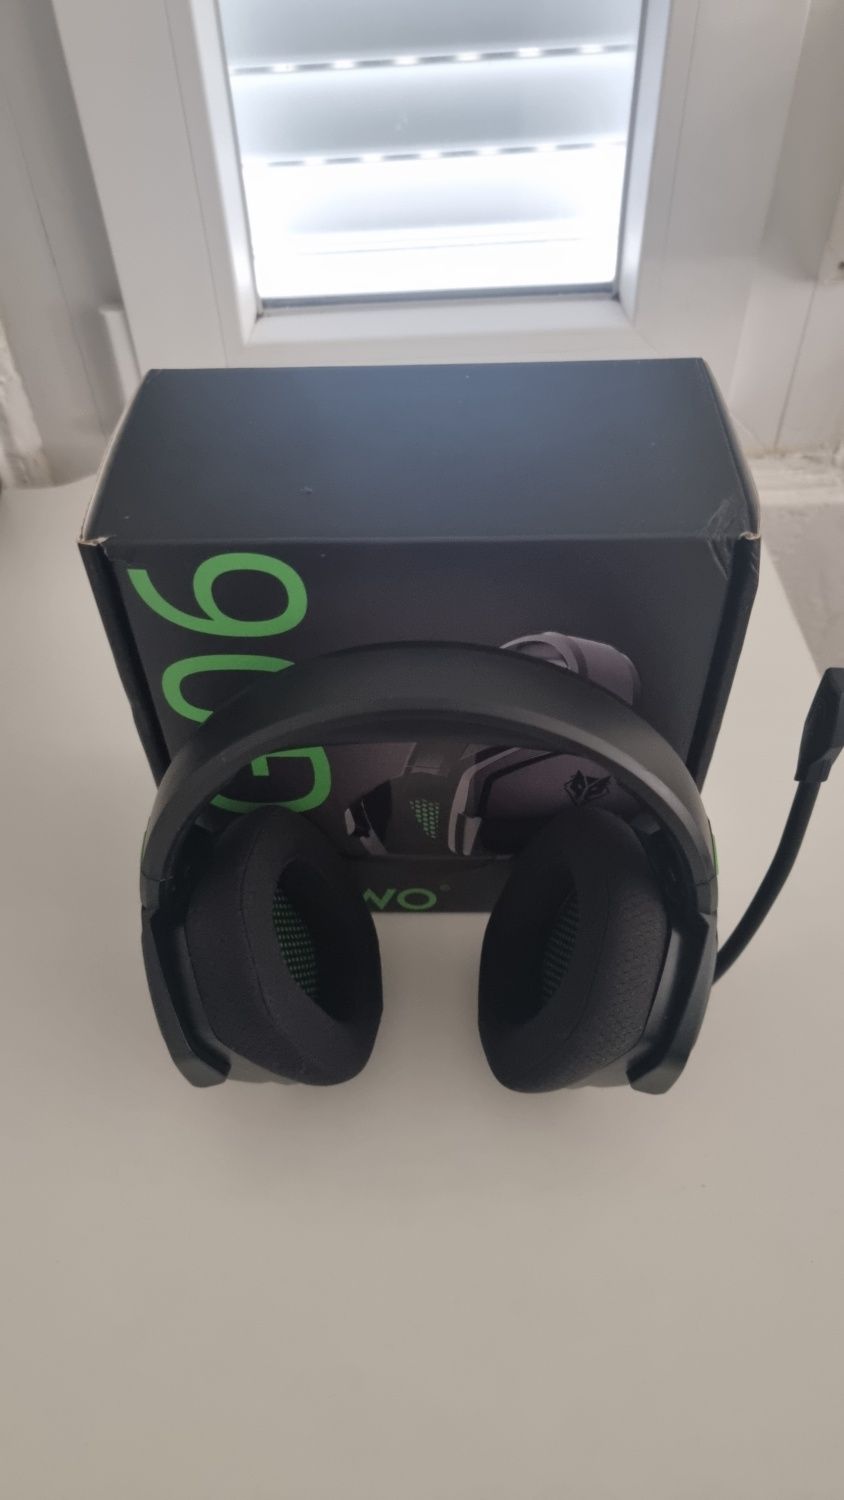 Nubwo g06 headset gaming